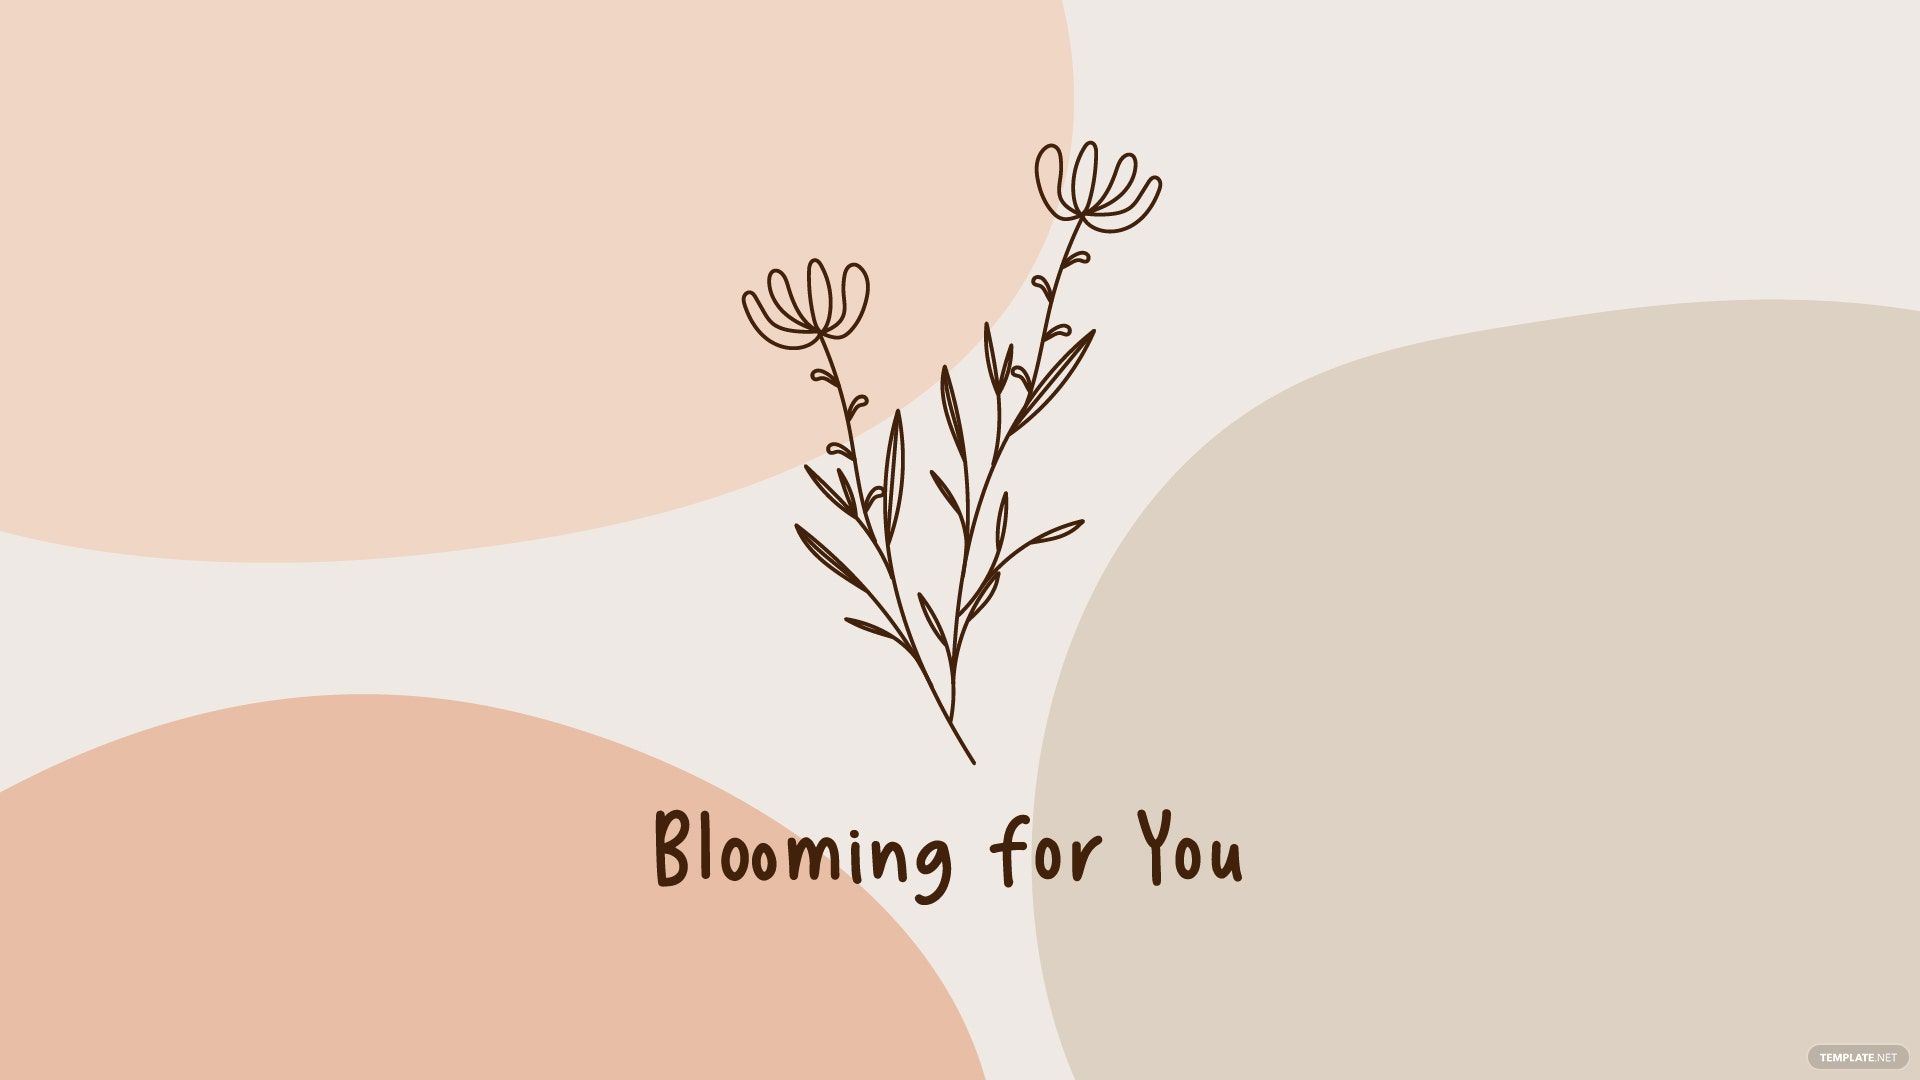 Free Aesthetic Flower Wallpaper, Illustrator, JPG, PNG, SVG